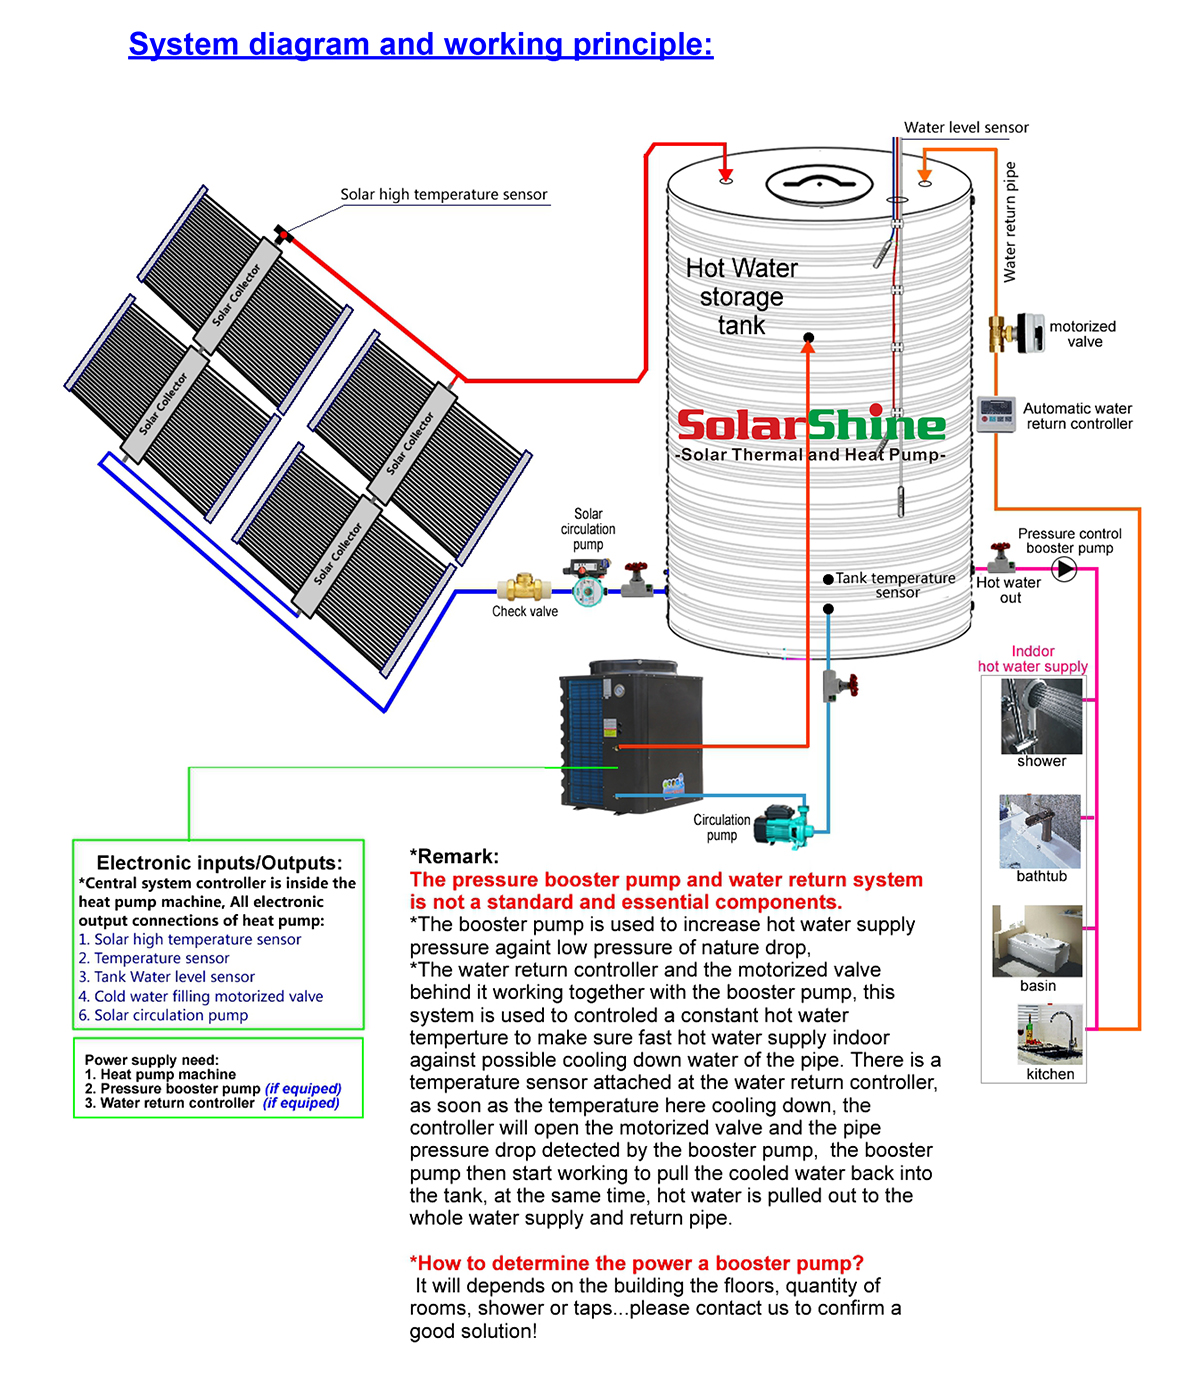 સૌર હાઇબ્રિડ હીટ પંપ સિસ્ટમના કાર્યકારી સિદ્ધાંત